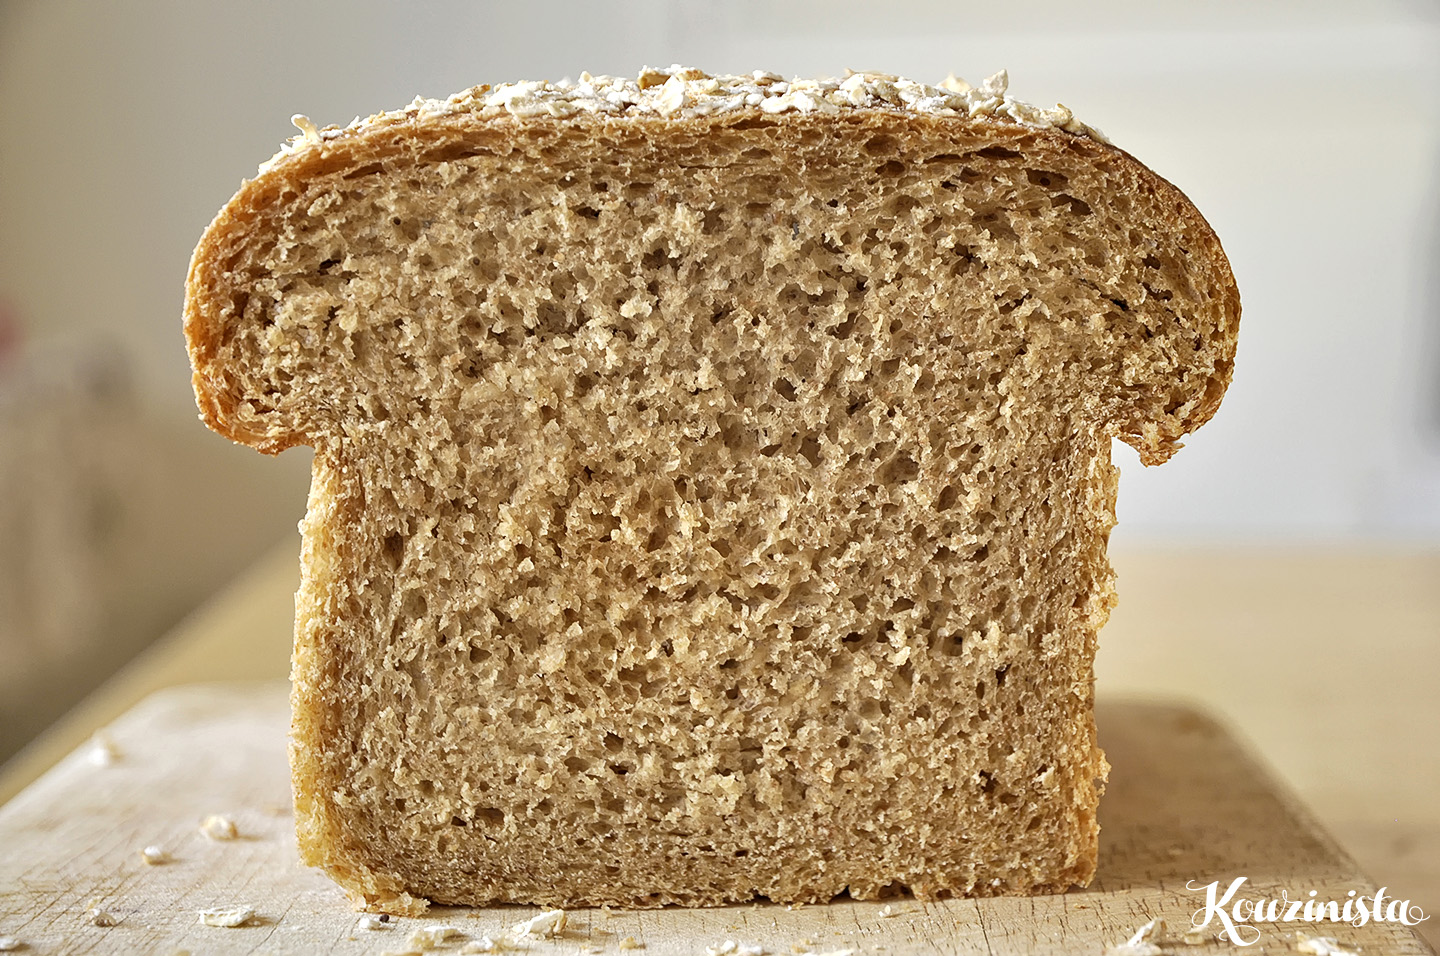 Ψωμί με νιφάδες βρώμης και ελαιόλαδο / Soft honey oat bread